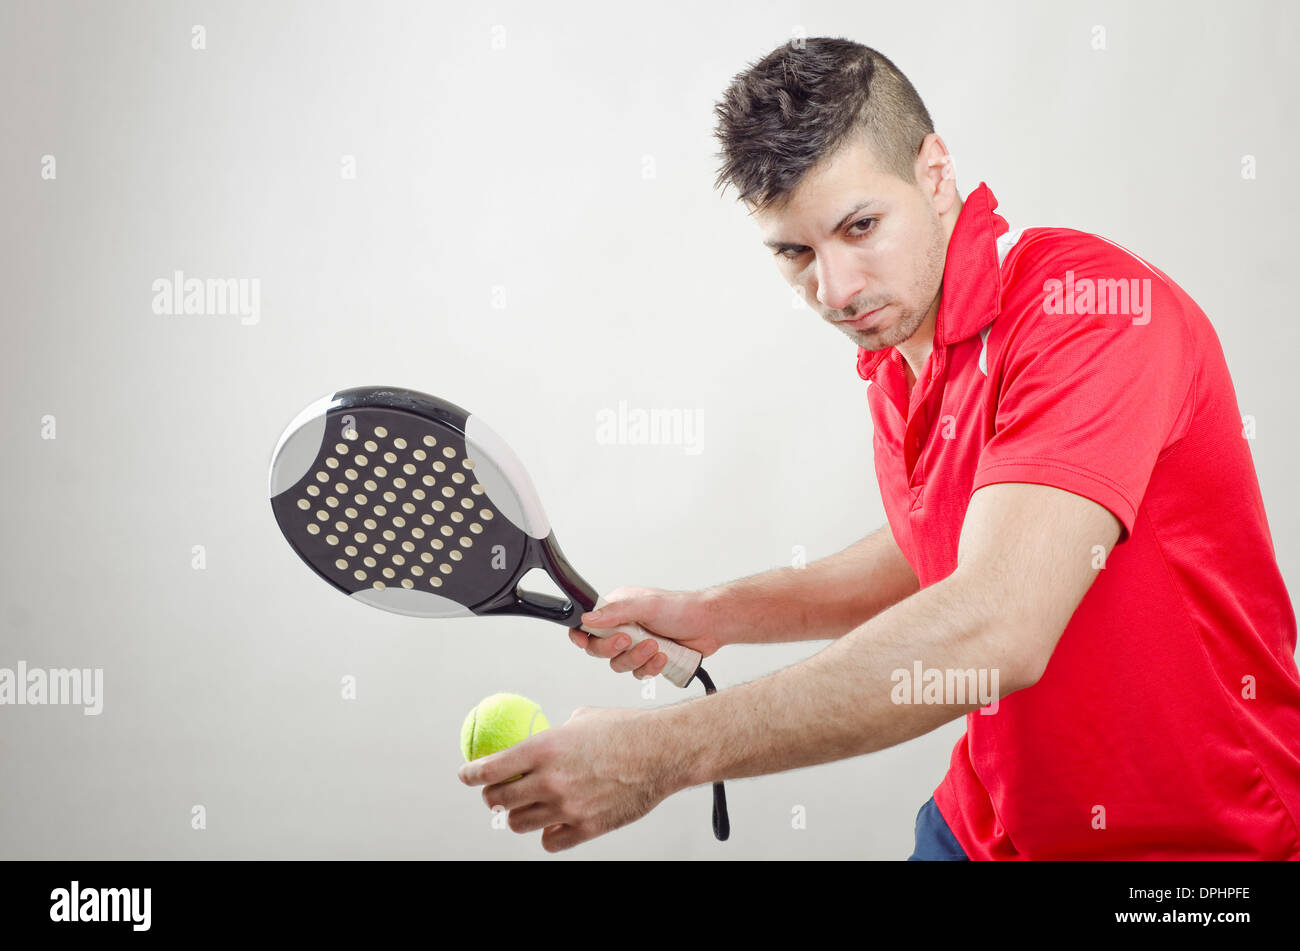 Jugador de tenis paddle listo para servir sobre fondo gris Foto de stock